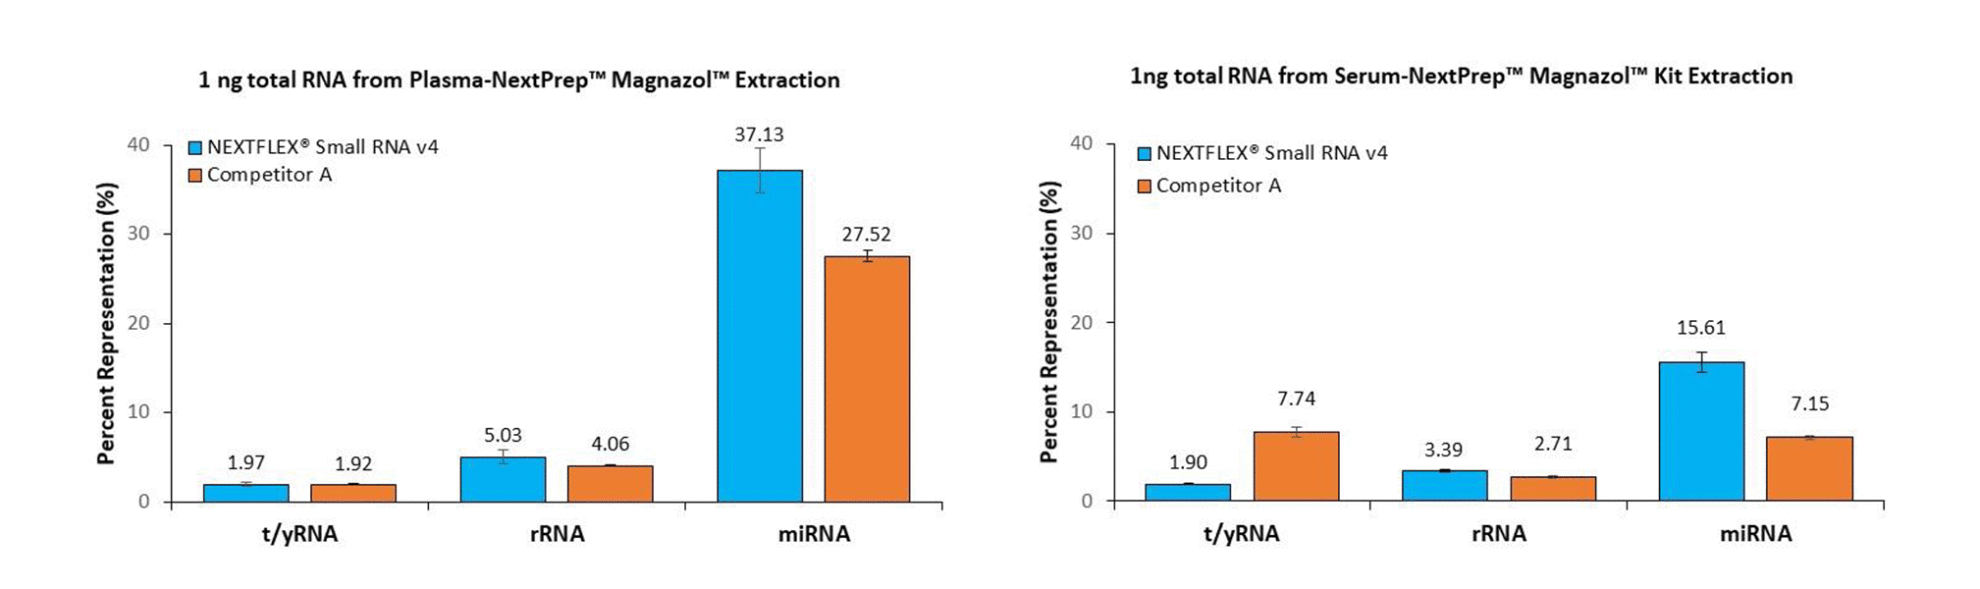 small RNA v4 fig-1